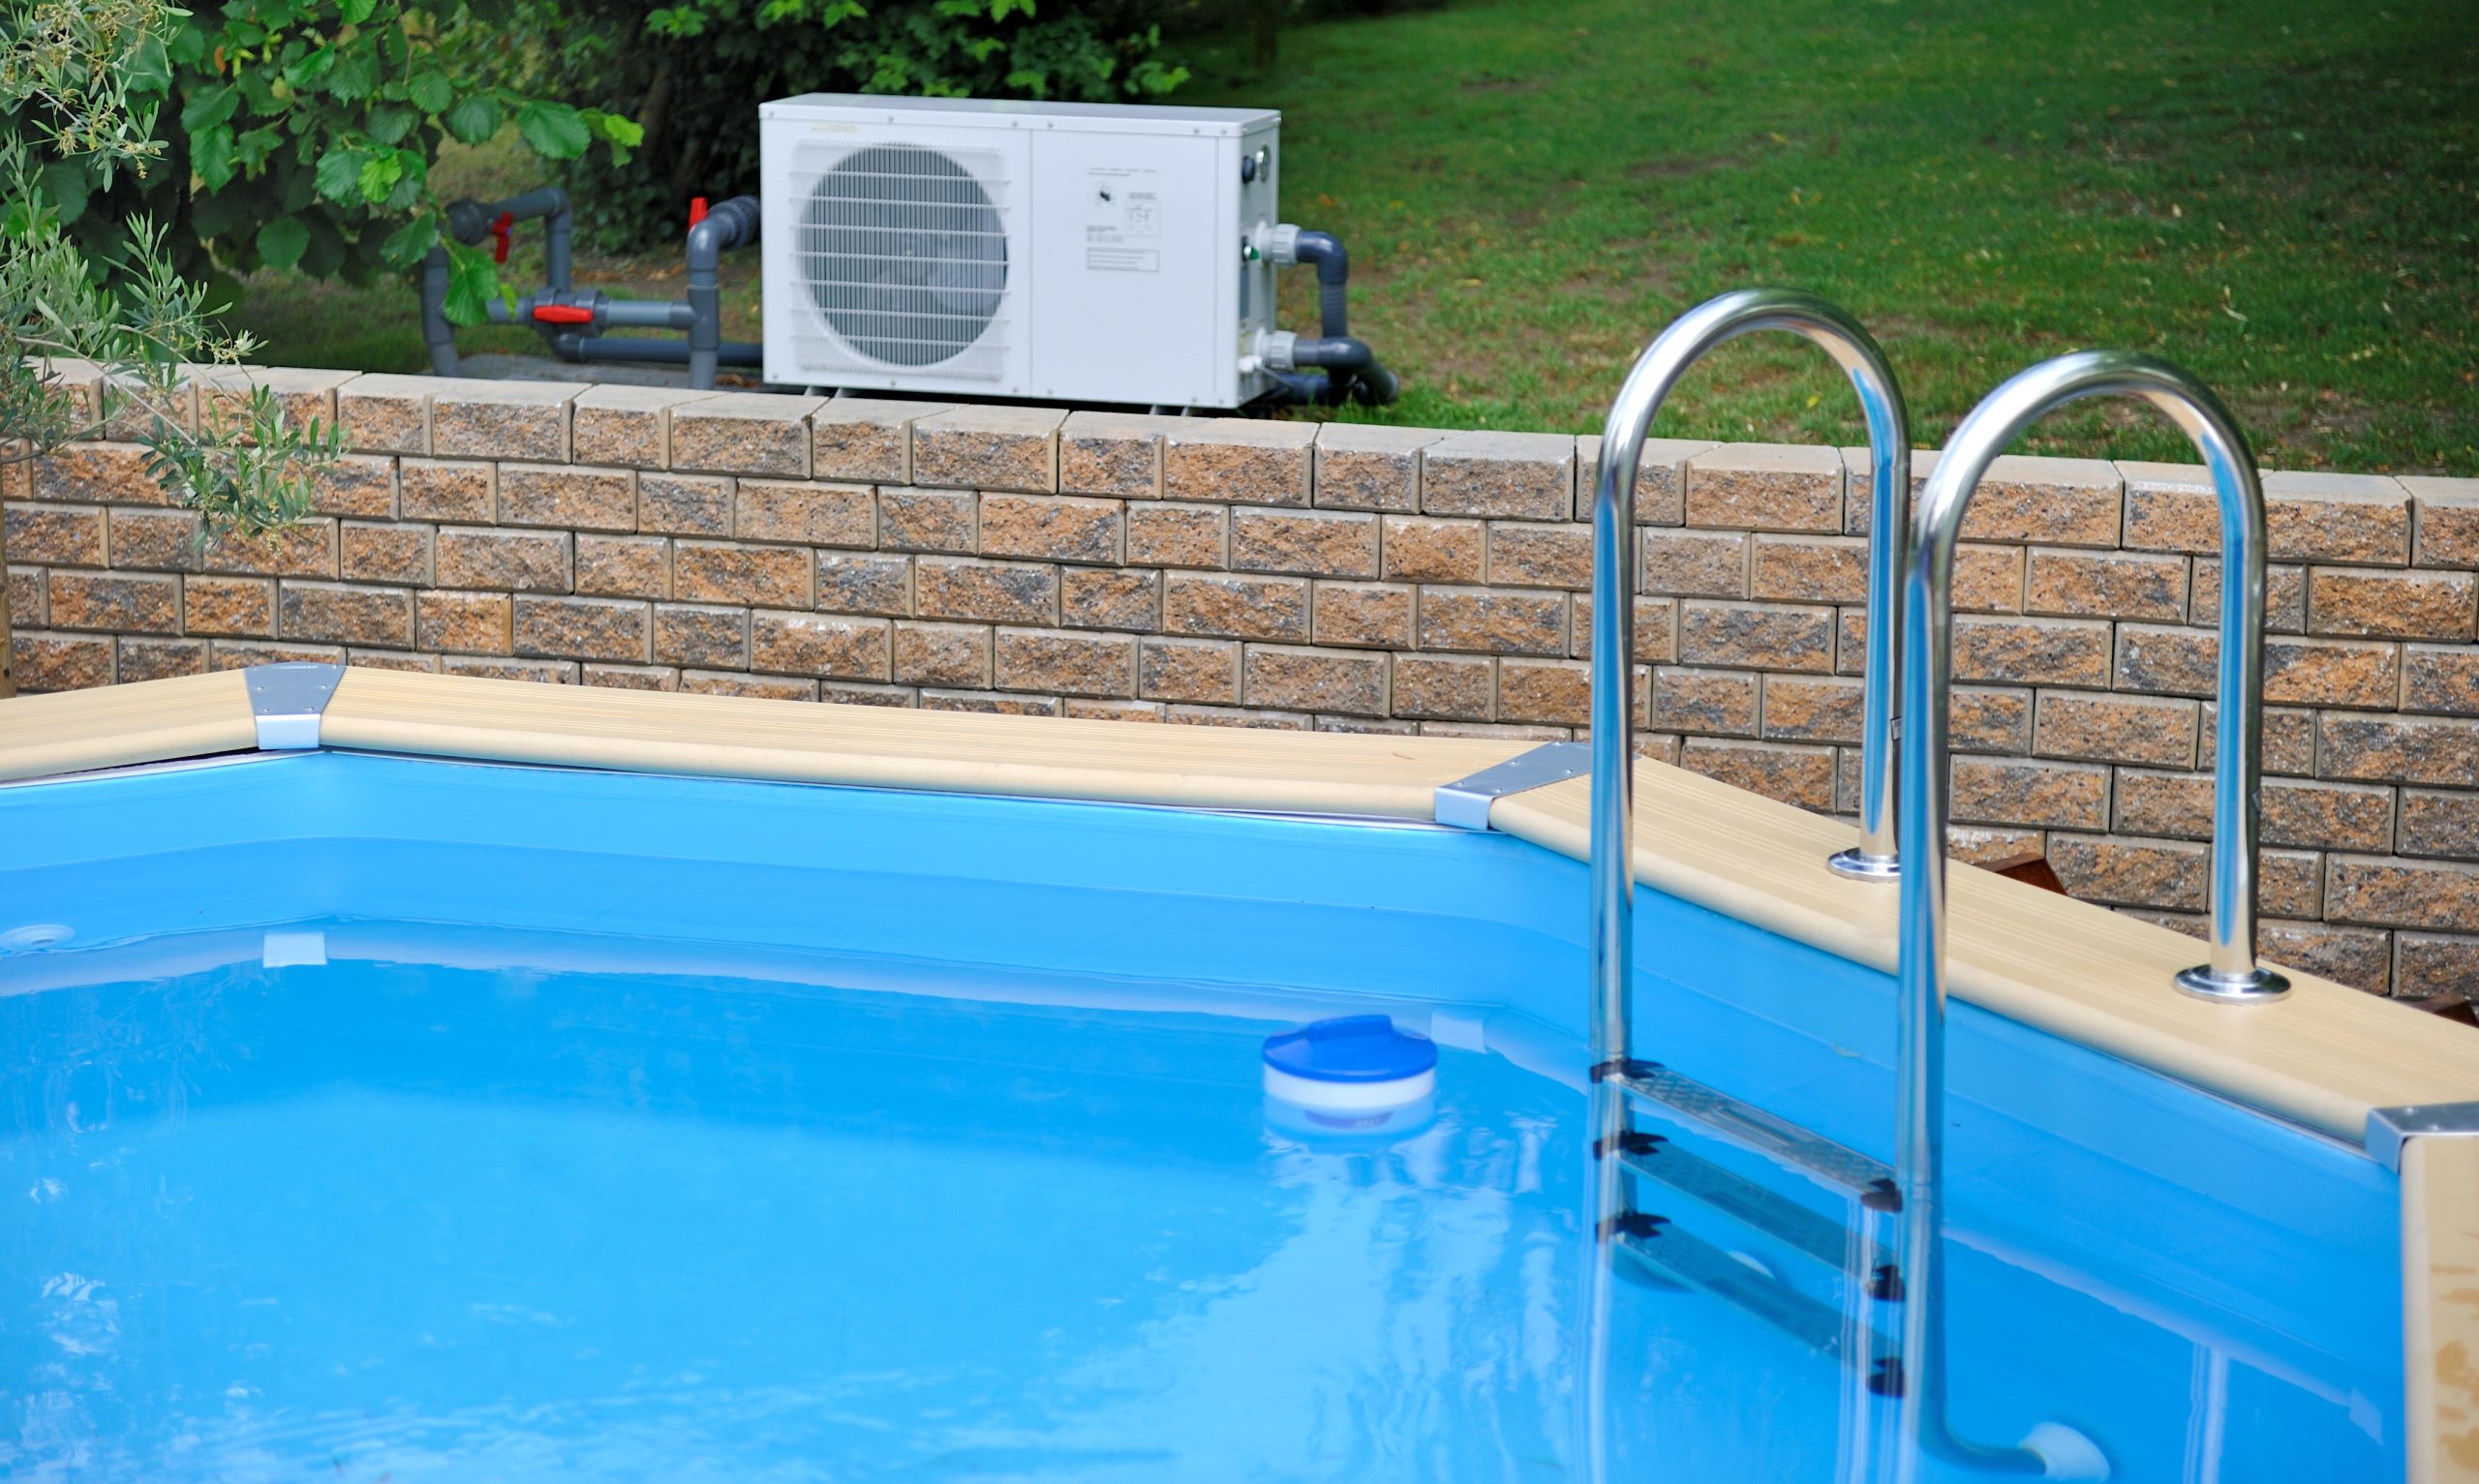 Der Pool im eigenen Garten lässt sich prima mit einer Wärmepumpe beheizen. Foto: ©asaflow / stock adobe